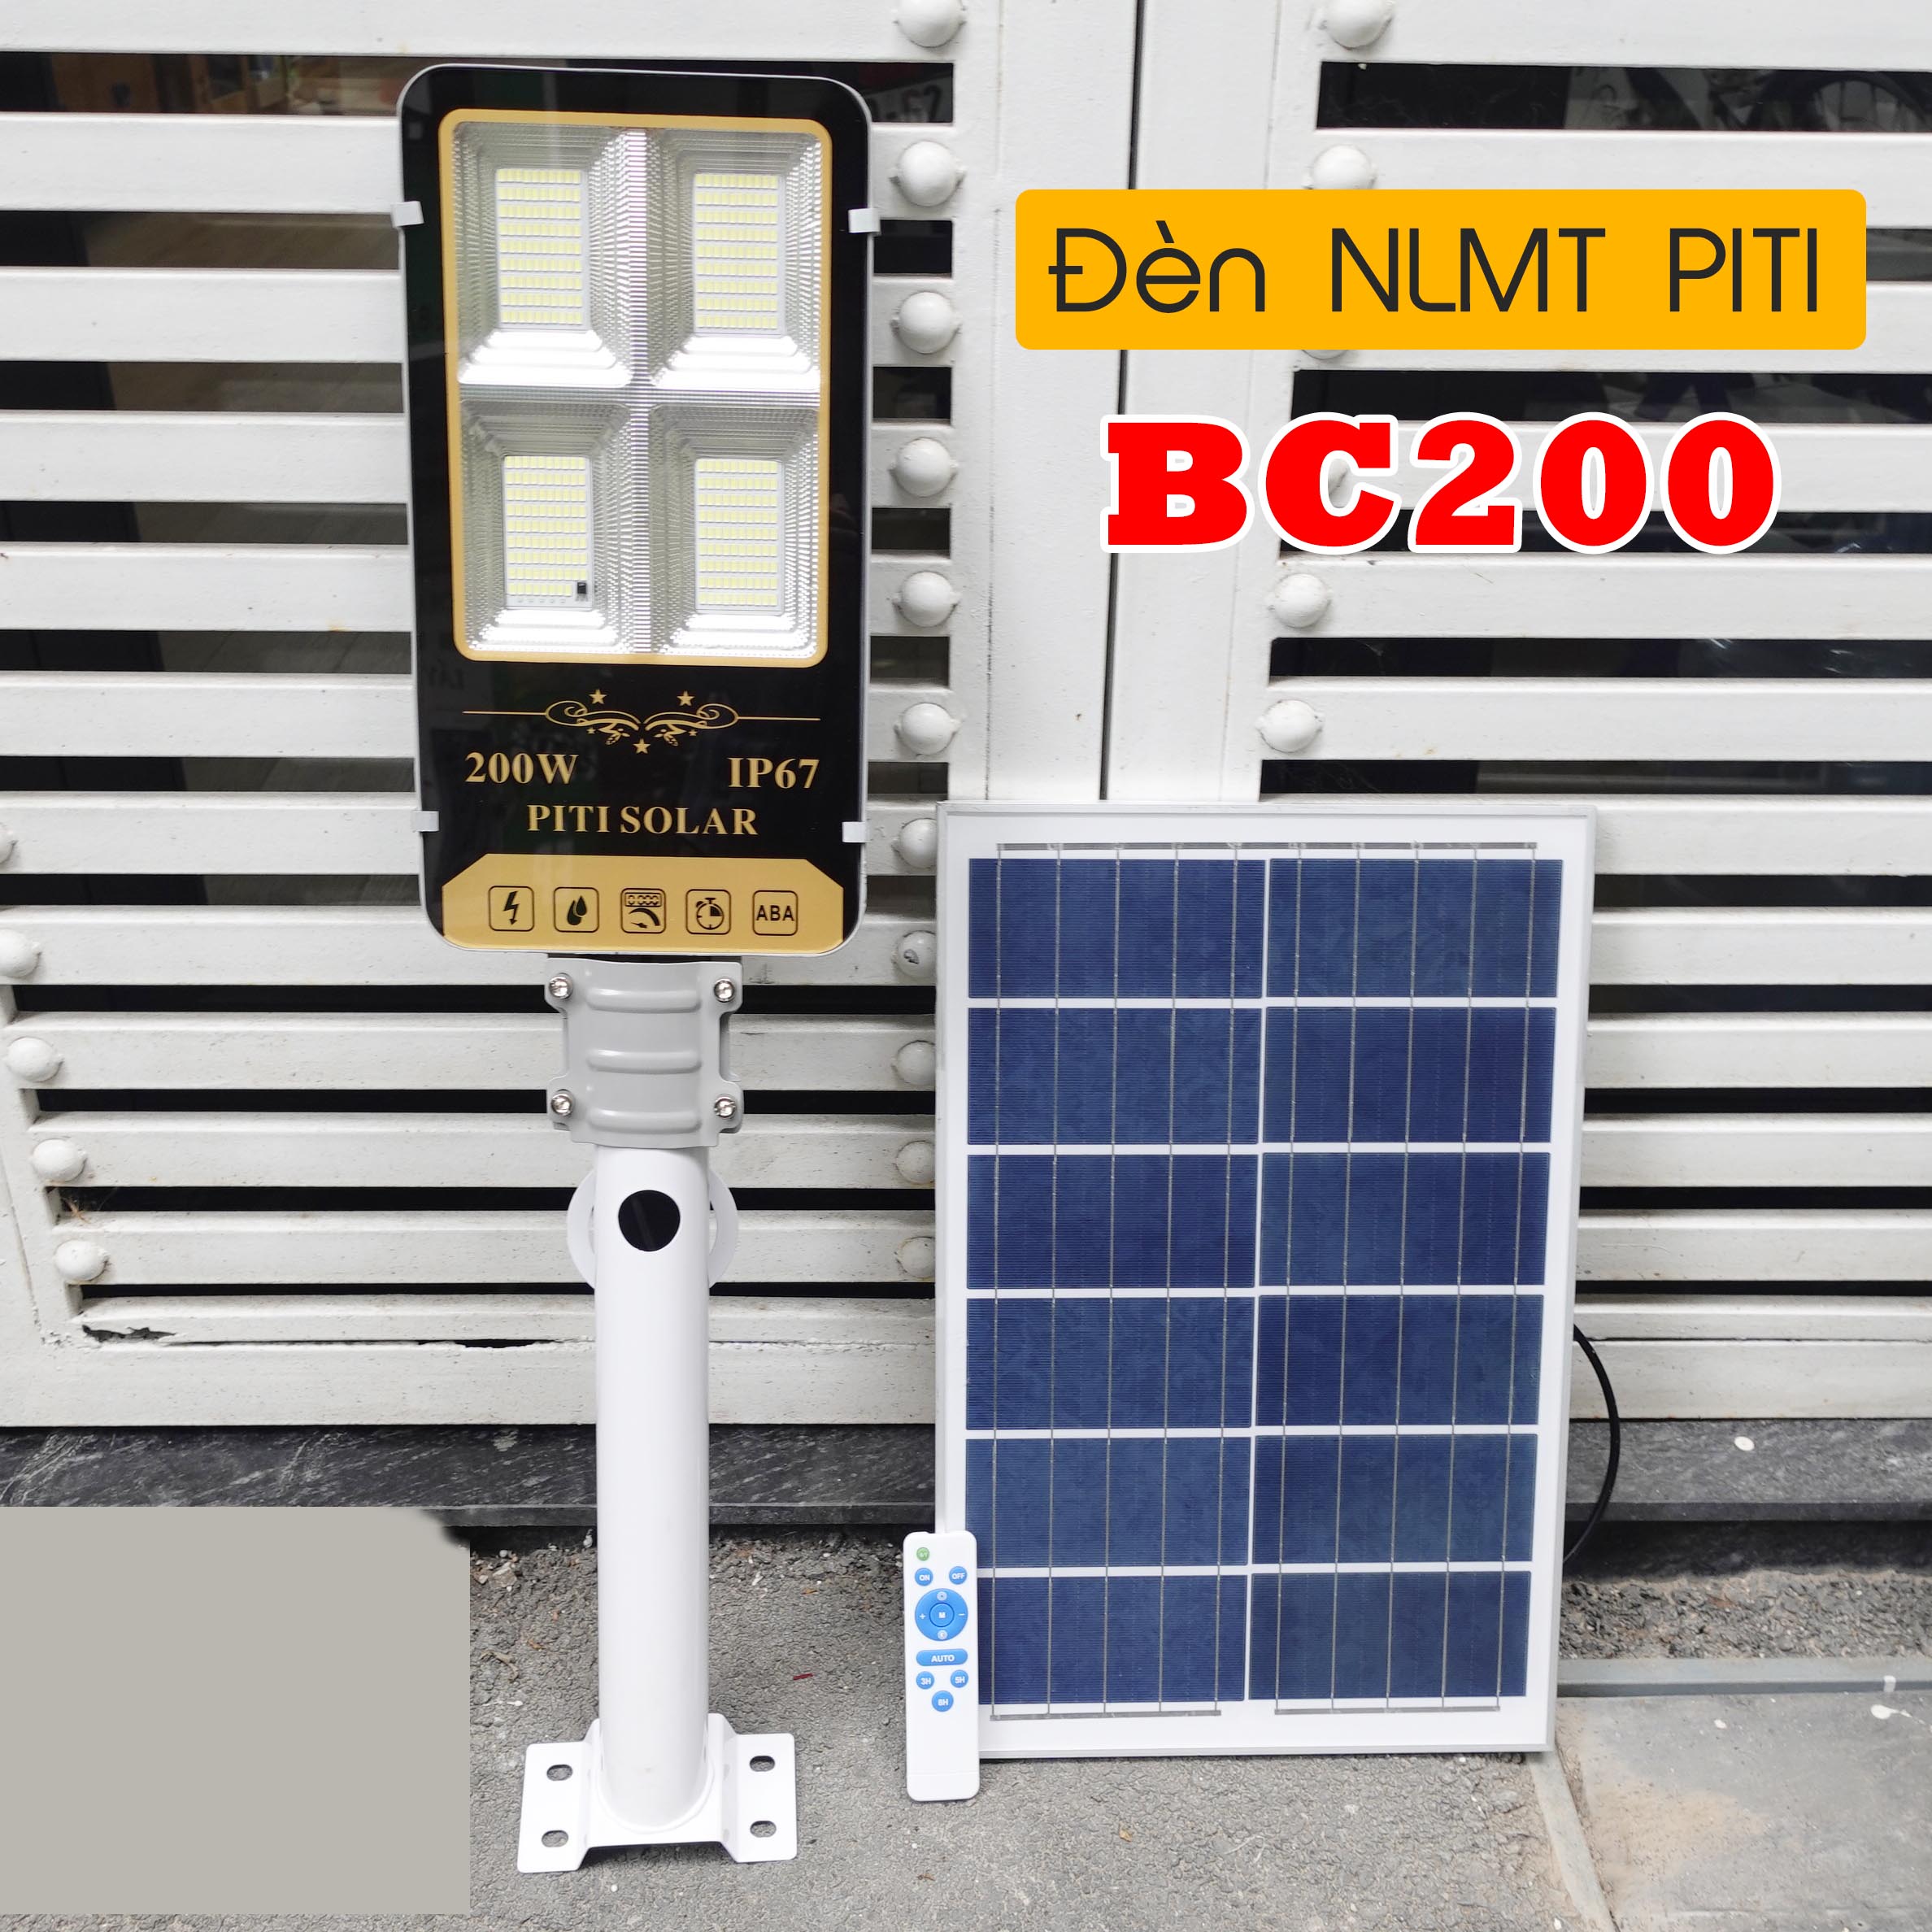 Đèn năng lượng mặt trời bàn chải PITI Solar BC200 (200W) kèm tấm pin NLMT - Bảo hành 2 năm